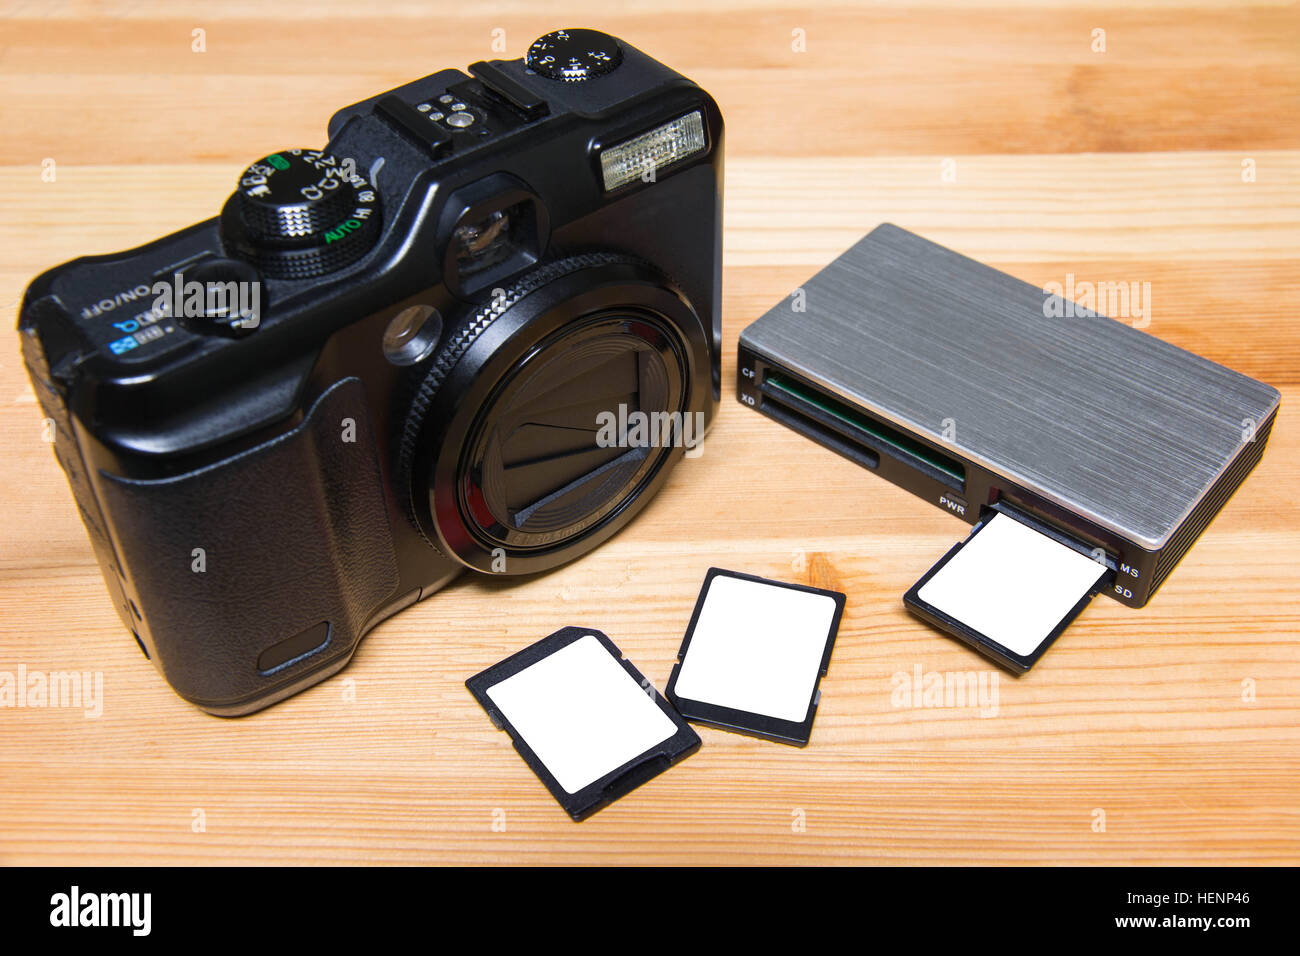 Lecteur de carte USB avec 3 cartes et de l'appareil photo sur la table en bois prêt à l'emploi Banque D'Images